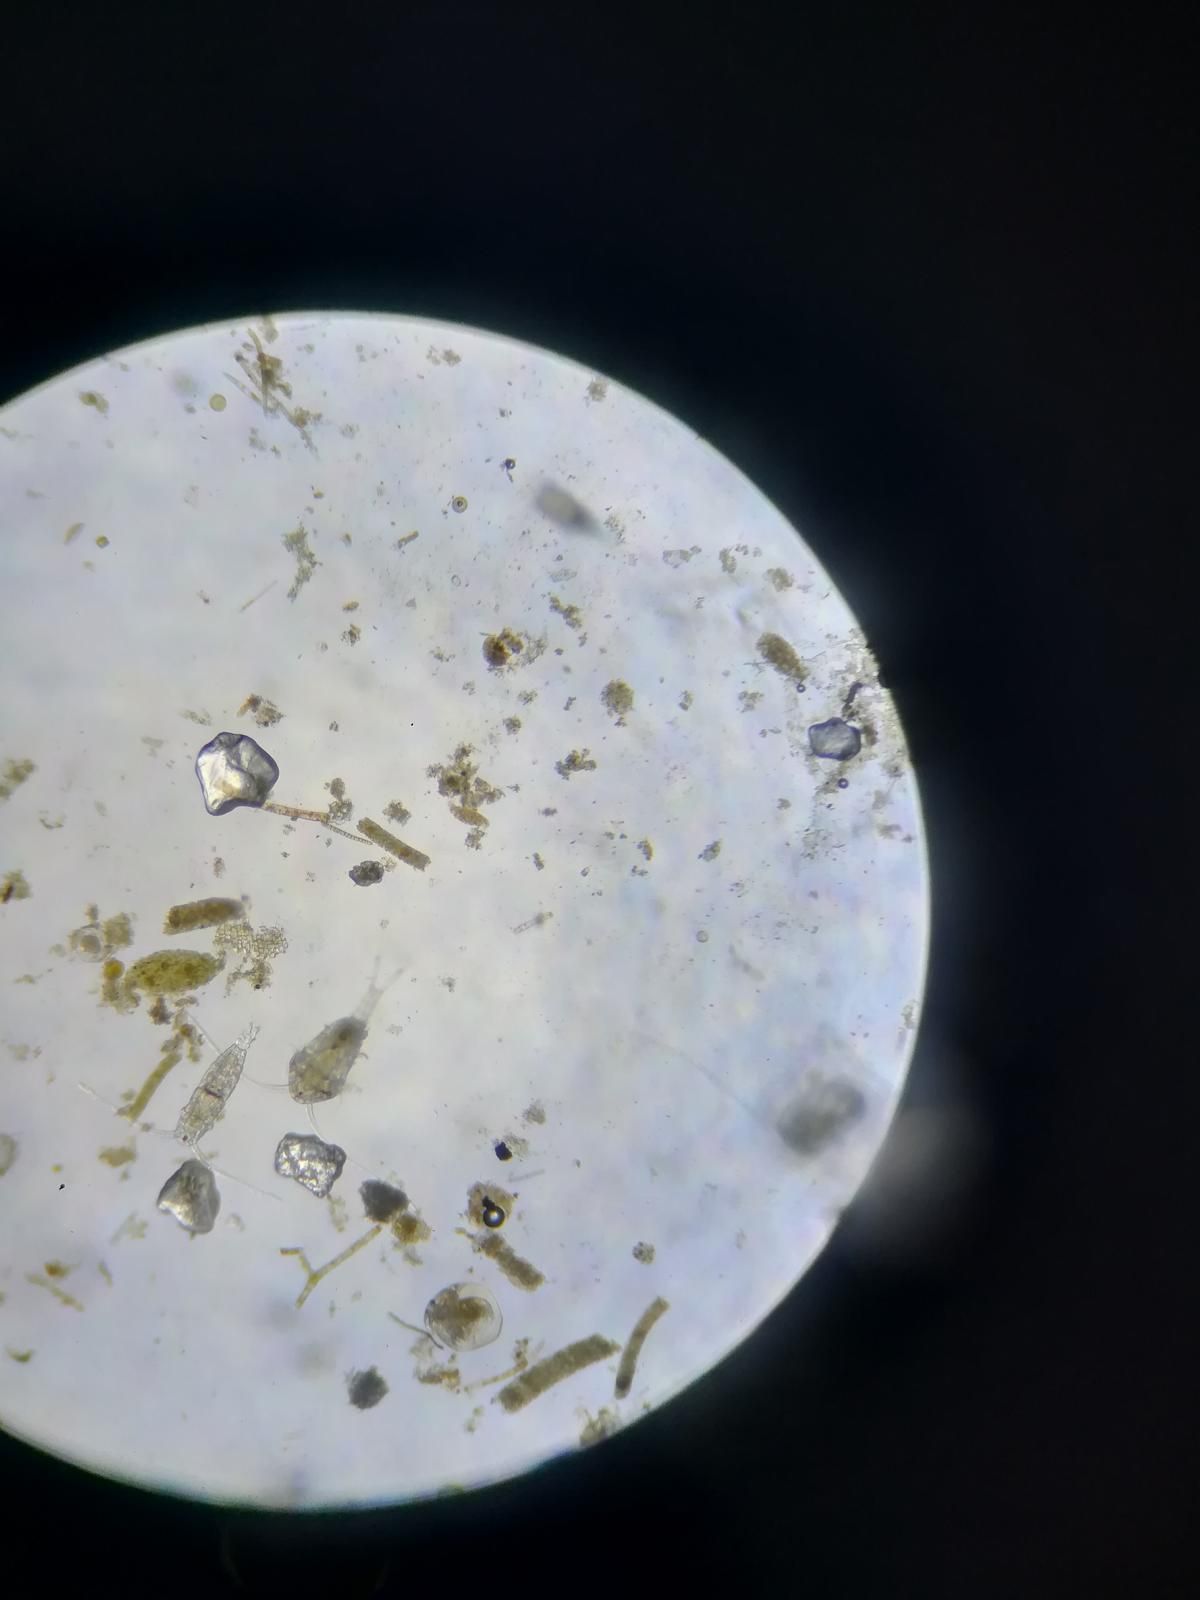 Оказалось, что если поскрести сачком в водорослях под волноломом, можно набрать пригоршню маленьких прозрачных креветок, а если провести сетью по дну, можно найти рыбу-змею и краба. Изучаем планктон под микроскопом, смотрим видео о физиологии тюленей и делаем эксперименты.